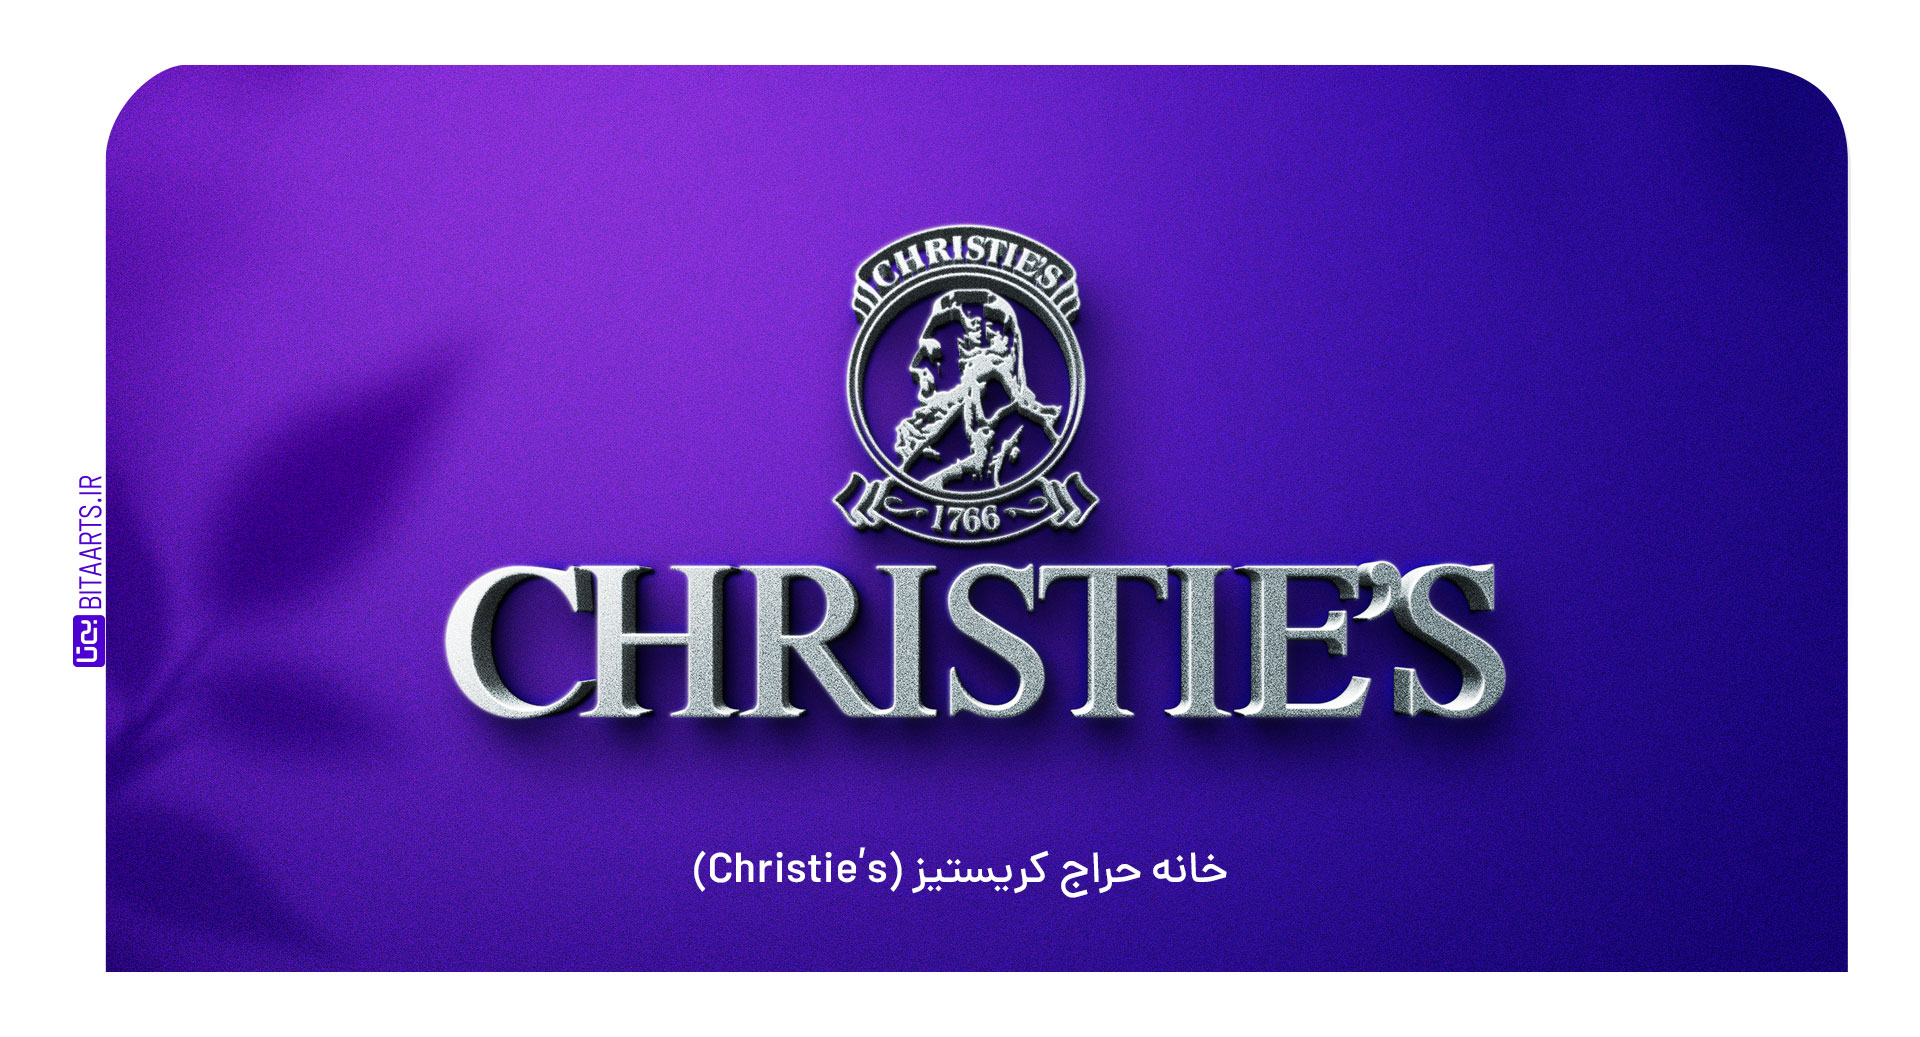 خانه حراج کریستیز (Christie’s)